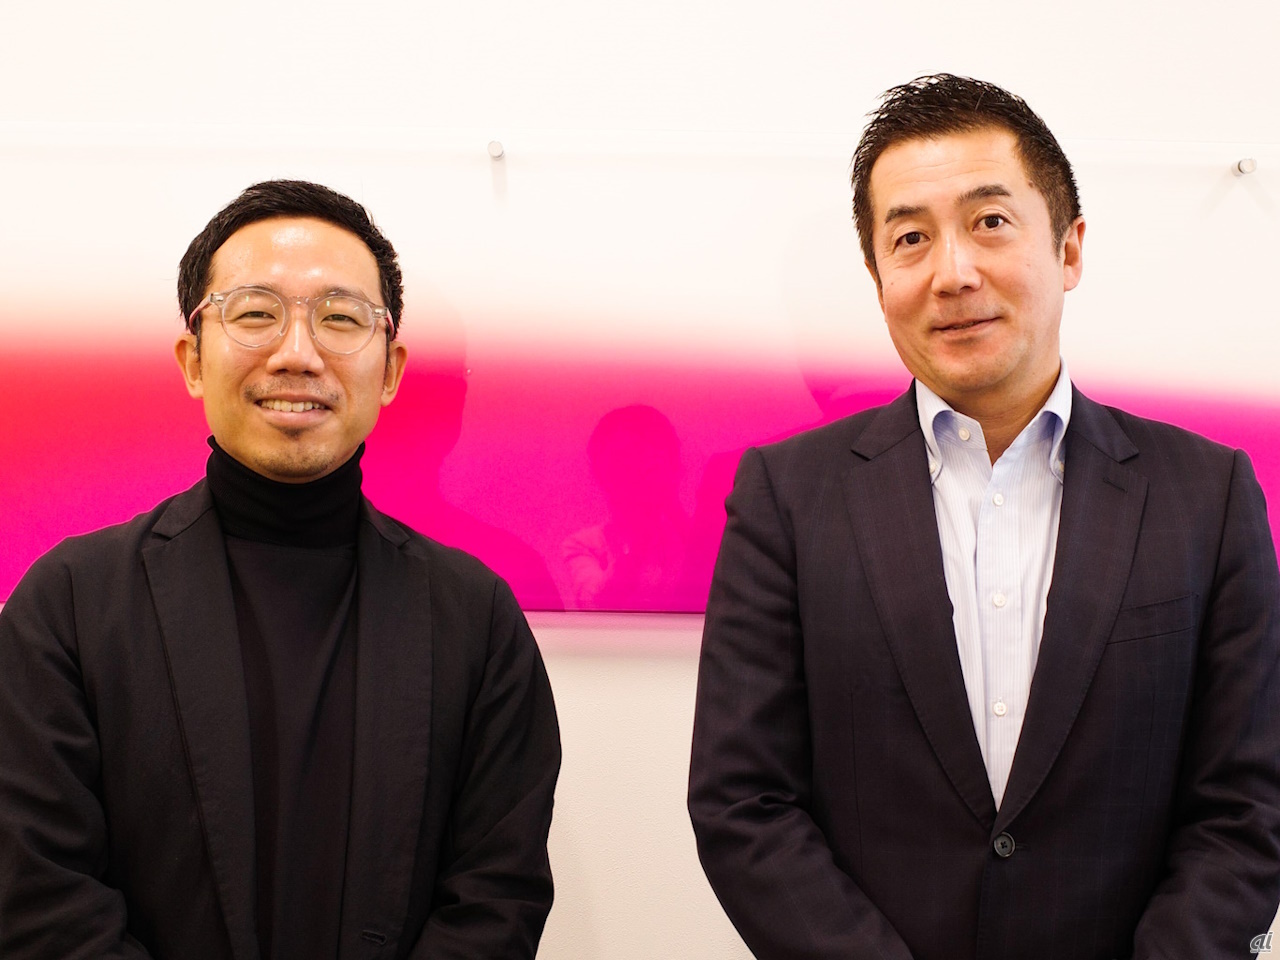 左から、Future Vision Studio代表の榊良祐氏、大京ブランドPJ統括リーダーの外山裕氏